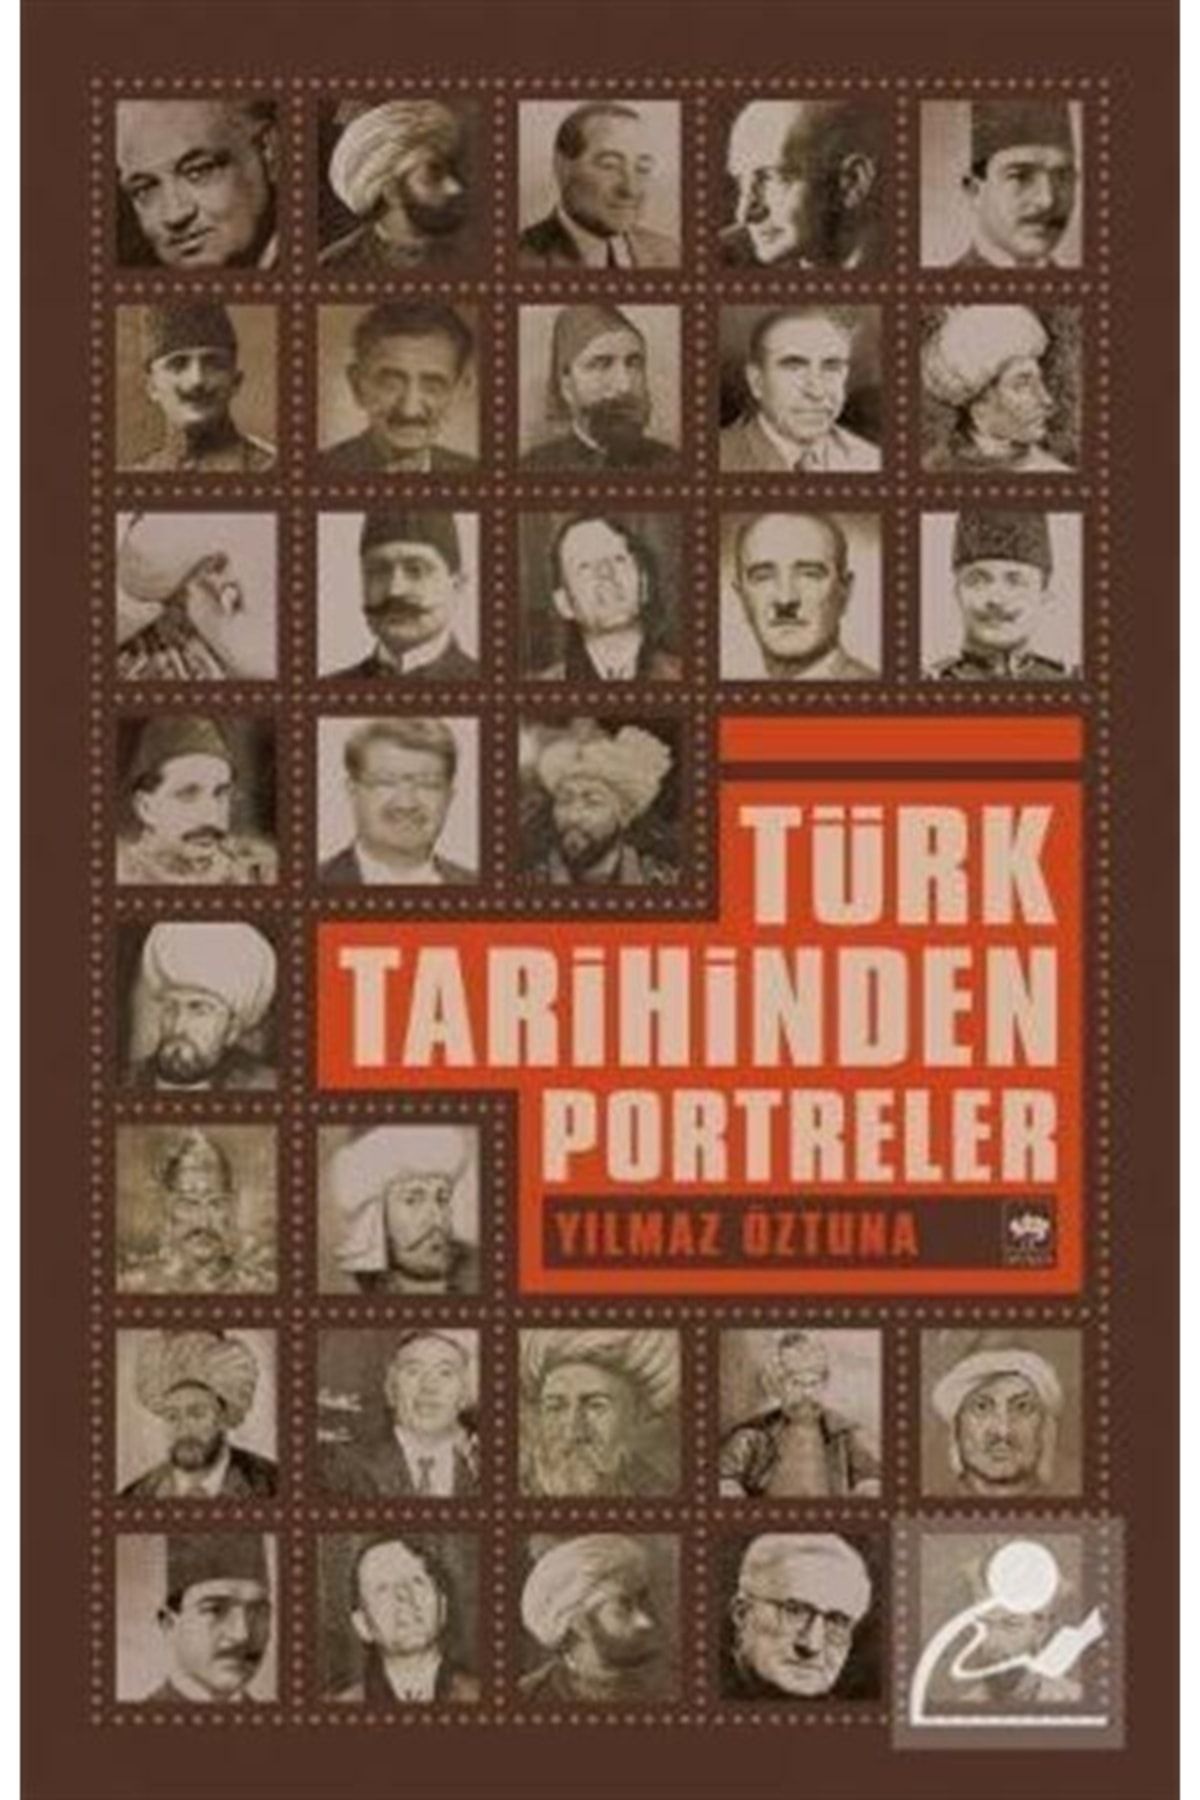 Ötüken Neşriyat Türk Tarihinden Portreler